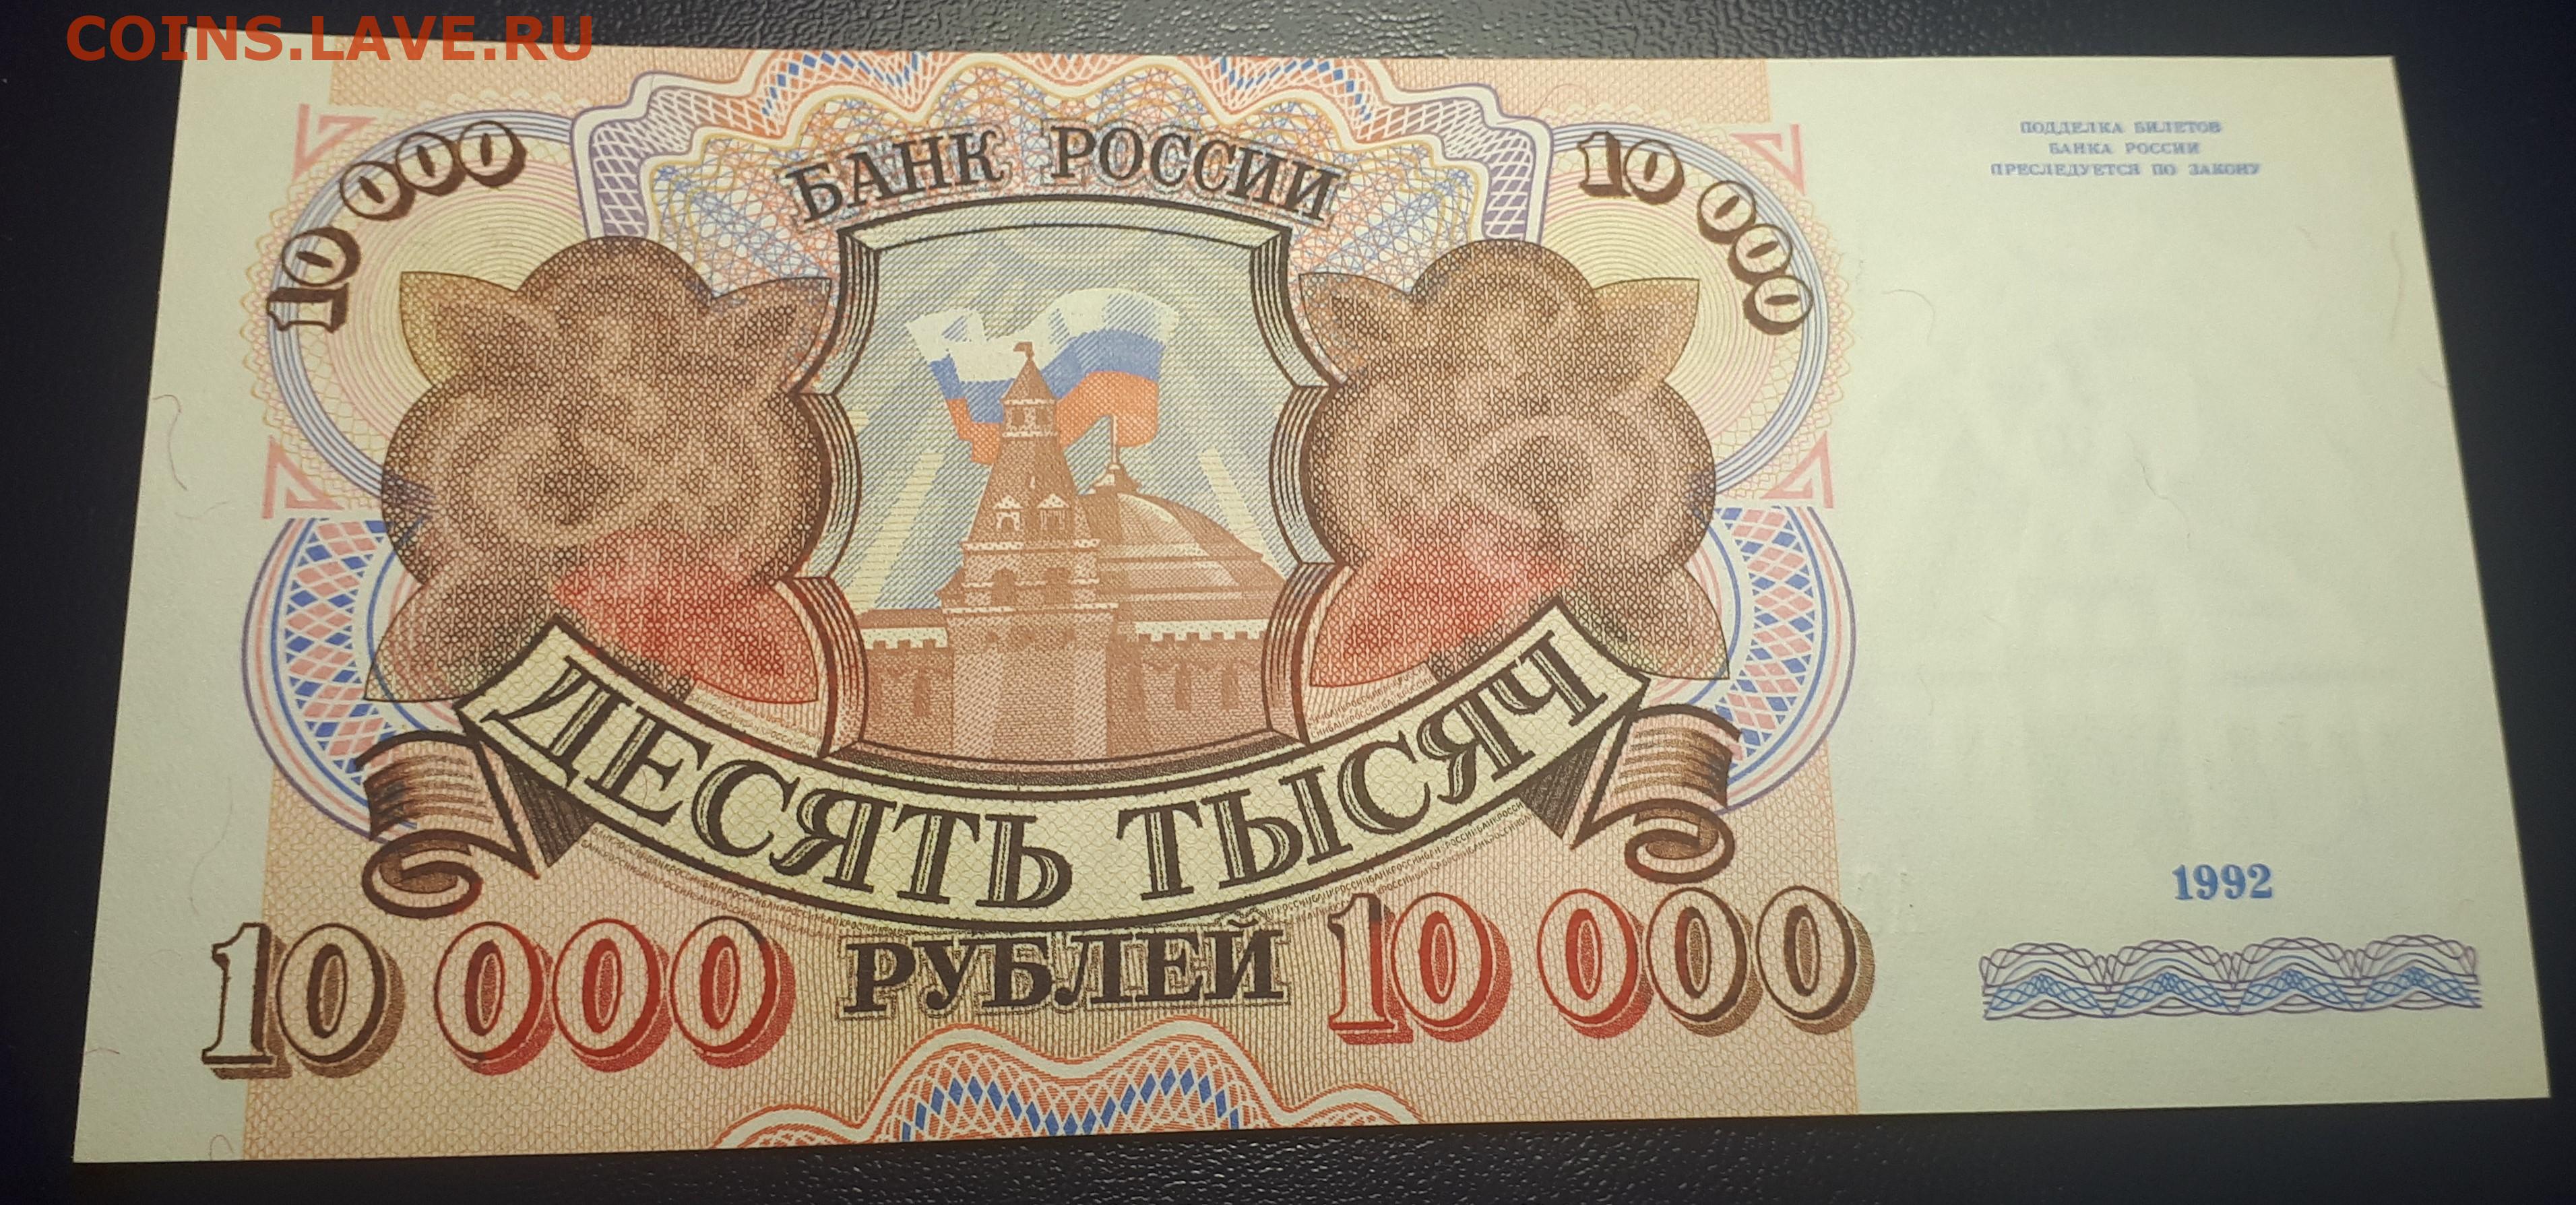 15 тыс россии. 10000 Рублей 1993. Купюра 10 000 рублей 1993 года.